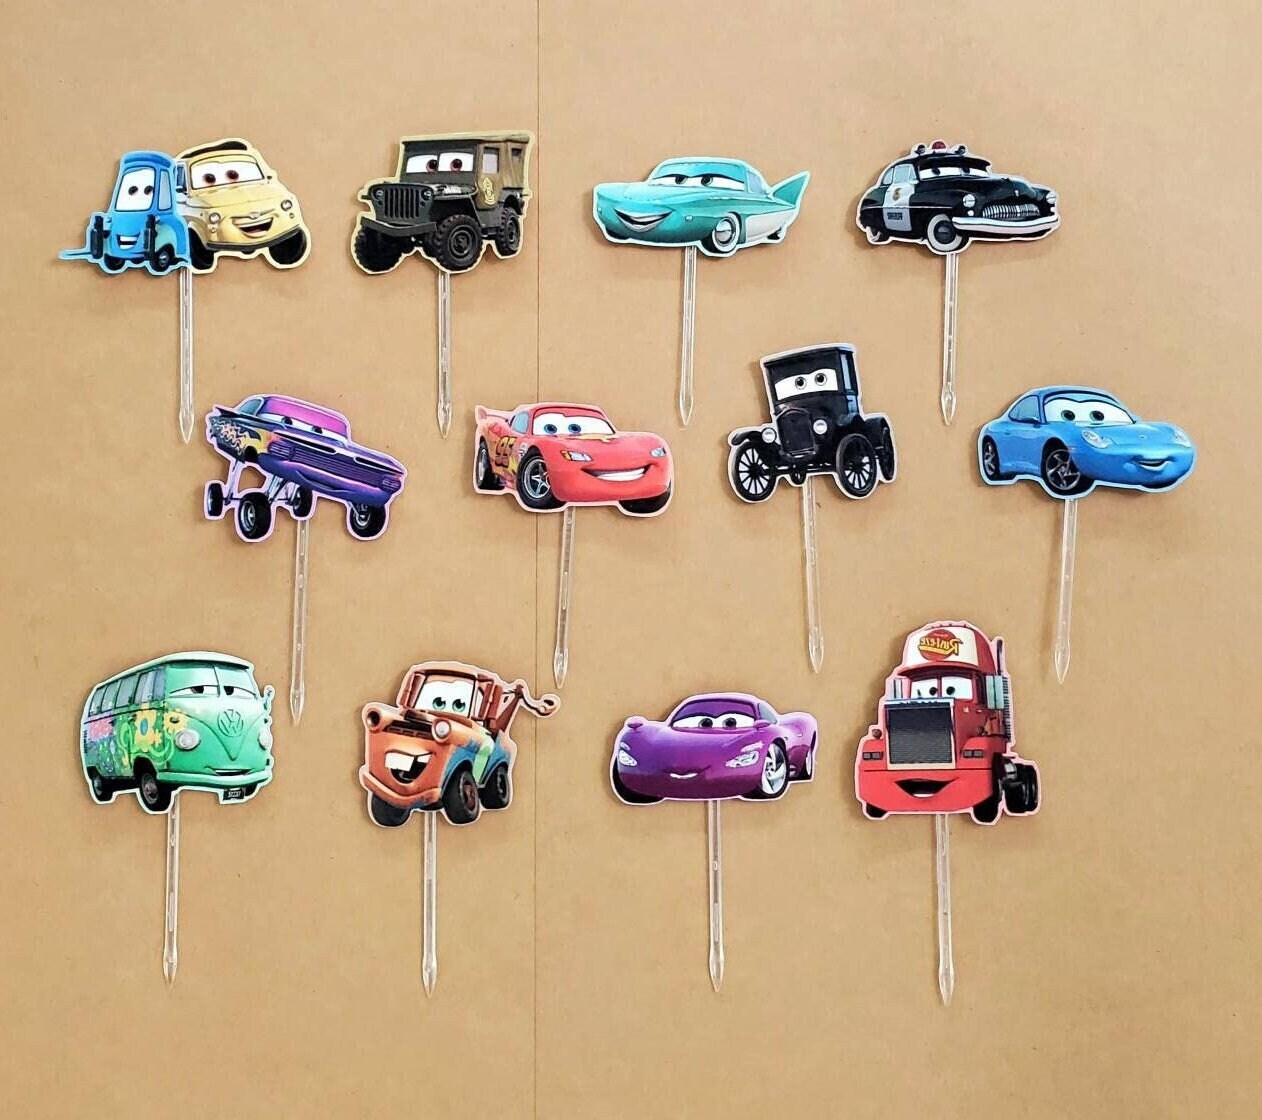 Figurine Cars Flash McQueen 7cm pour décoration de gâteau personnalisé –  Miss Popcake